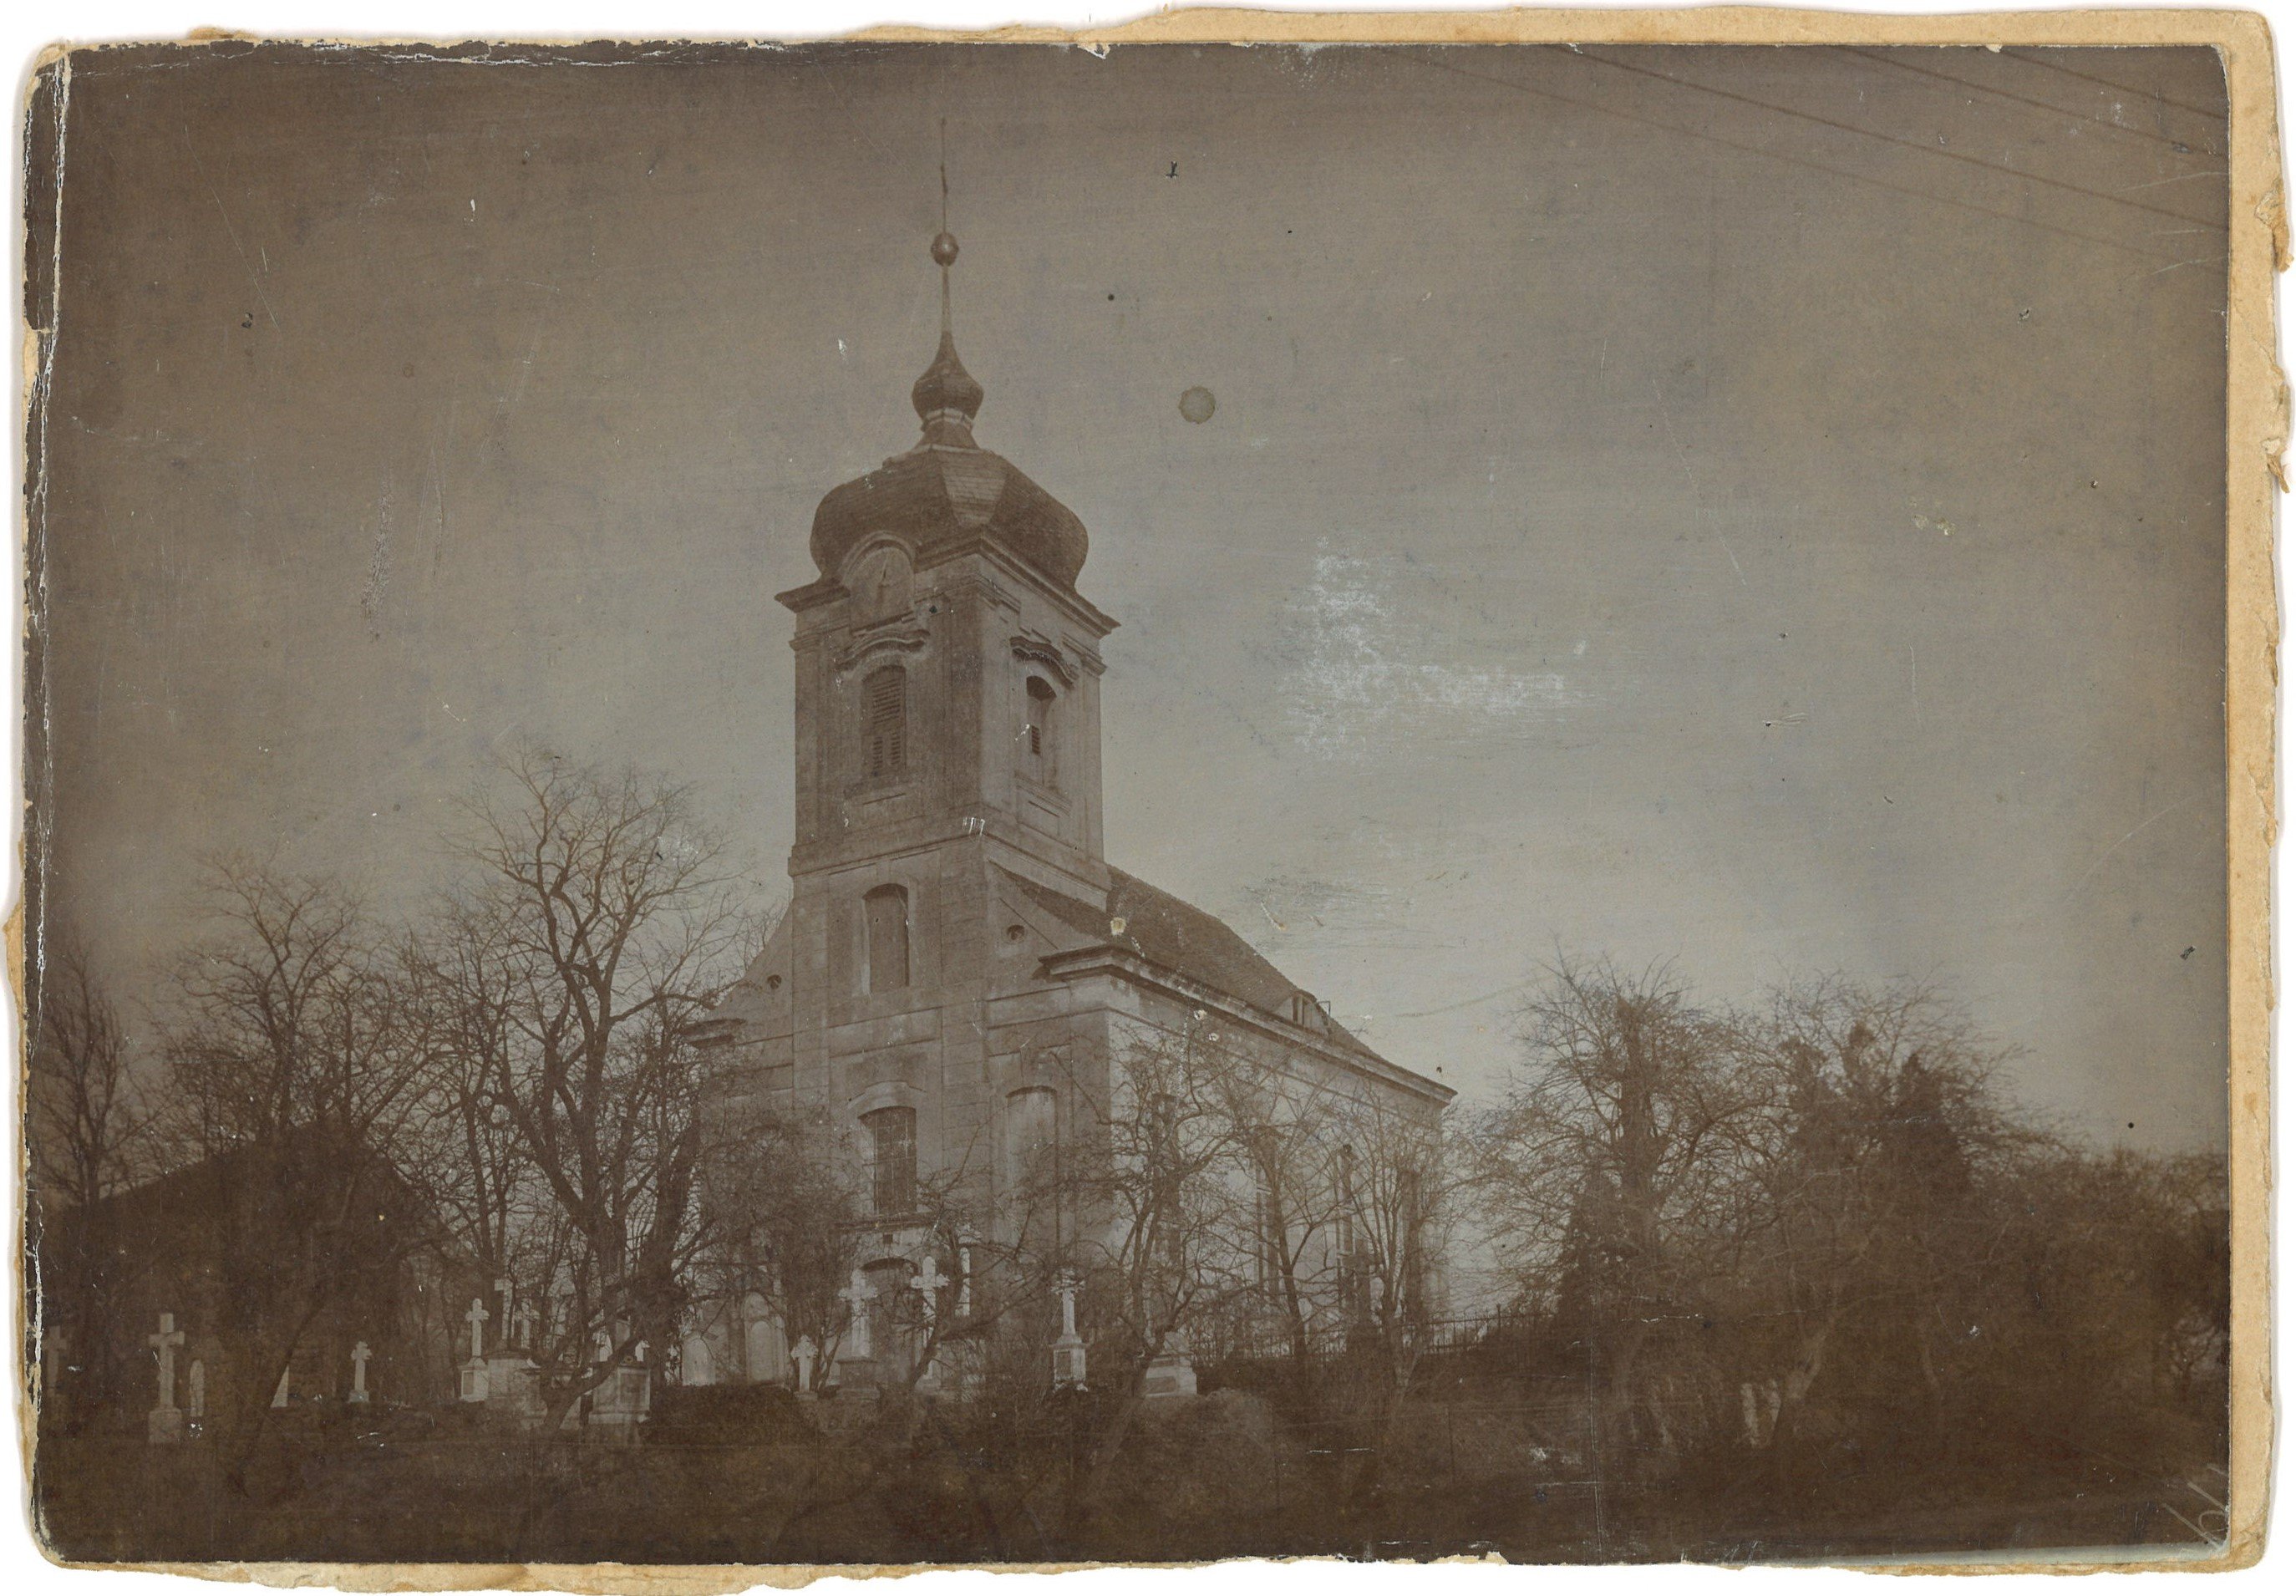 Päwesin (Kr. Westhavelland): Dorfkirche von Südwesten (Landesgeschichtliche Vereinigung für die Mark Brandenburg e.V., Archiv CC BY)